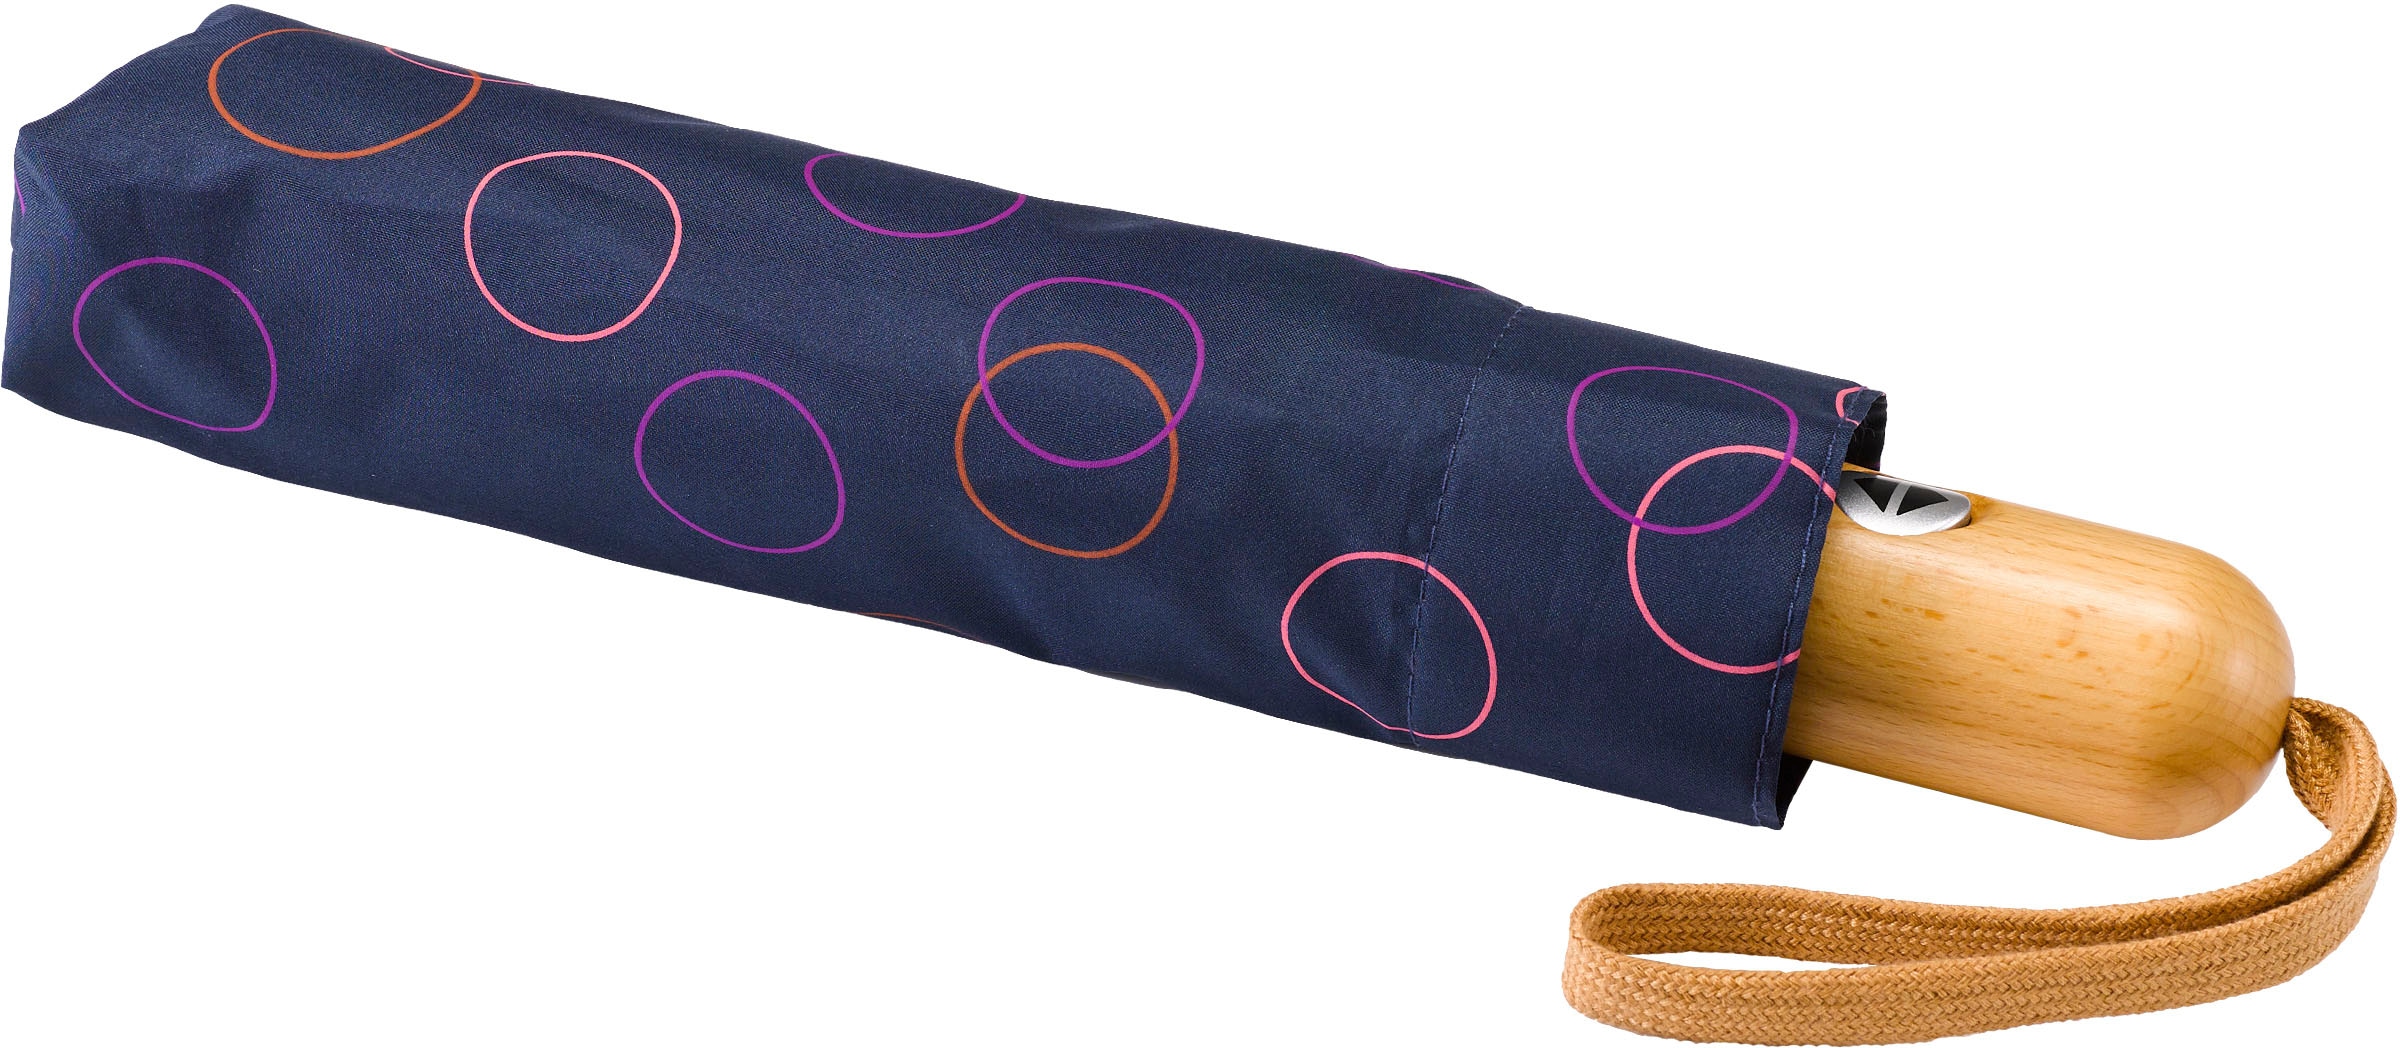 Taschenregenschirm marine, Kreise »Umwelt-Taschenschirm, pink« EuroSCHIRM® kaufen